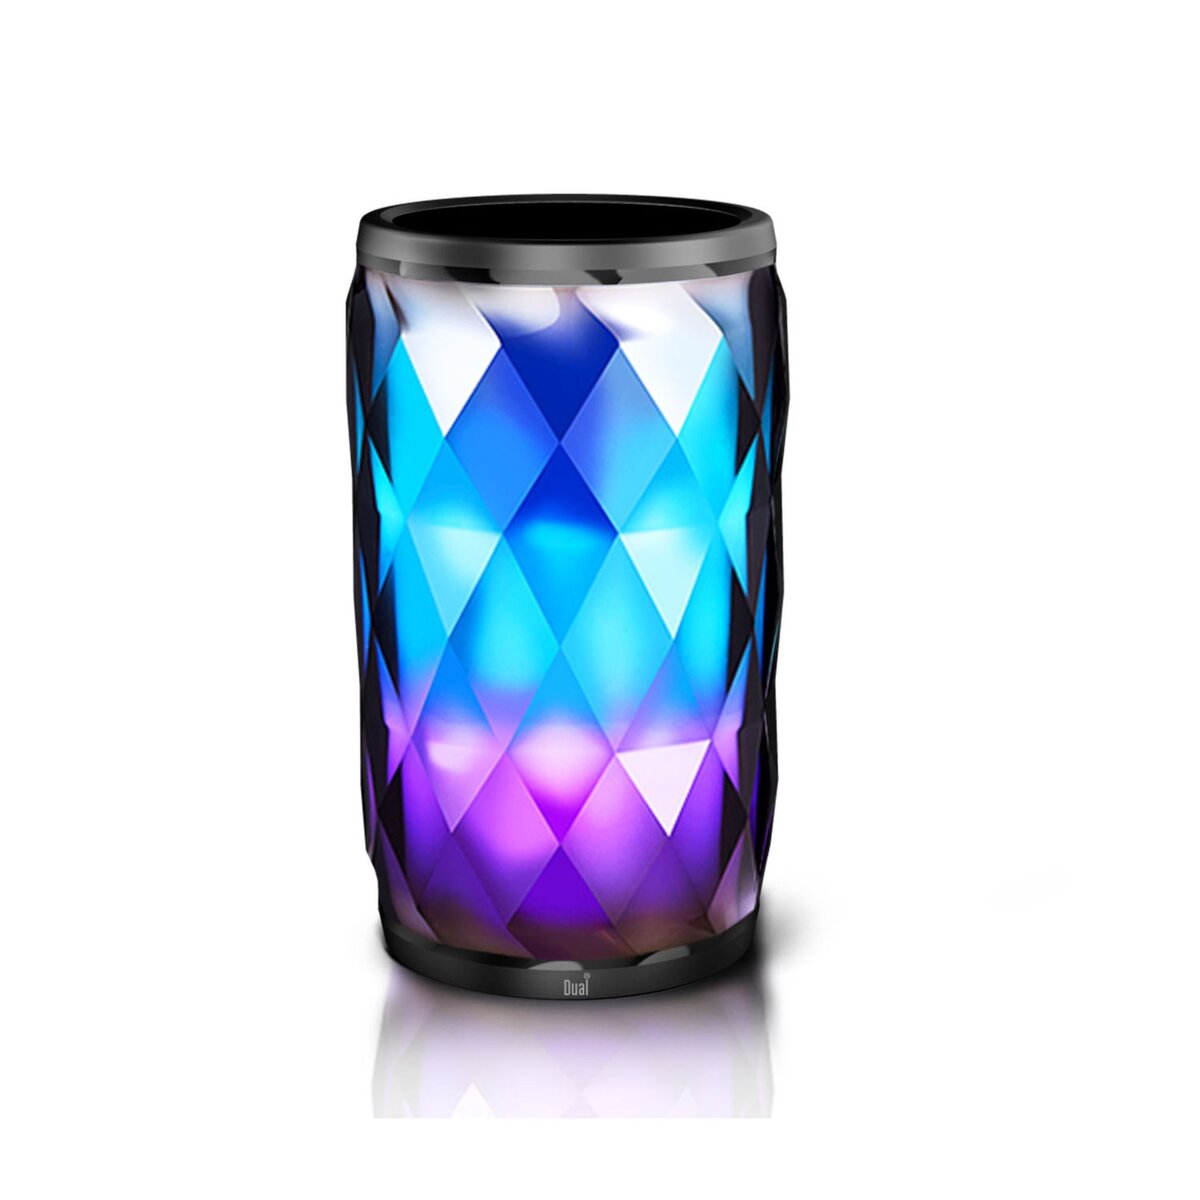 DUAL Enceinte portable Cristal LED 6 couleurs Bluetooth